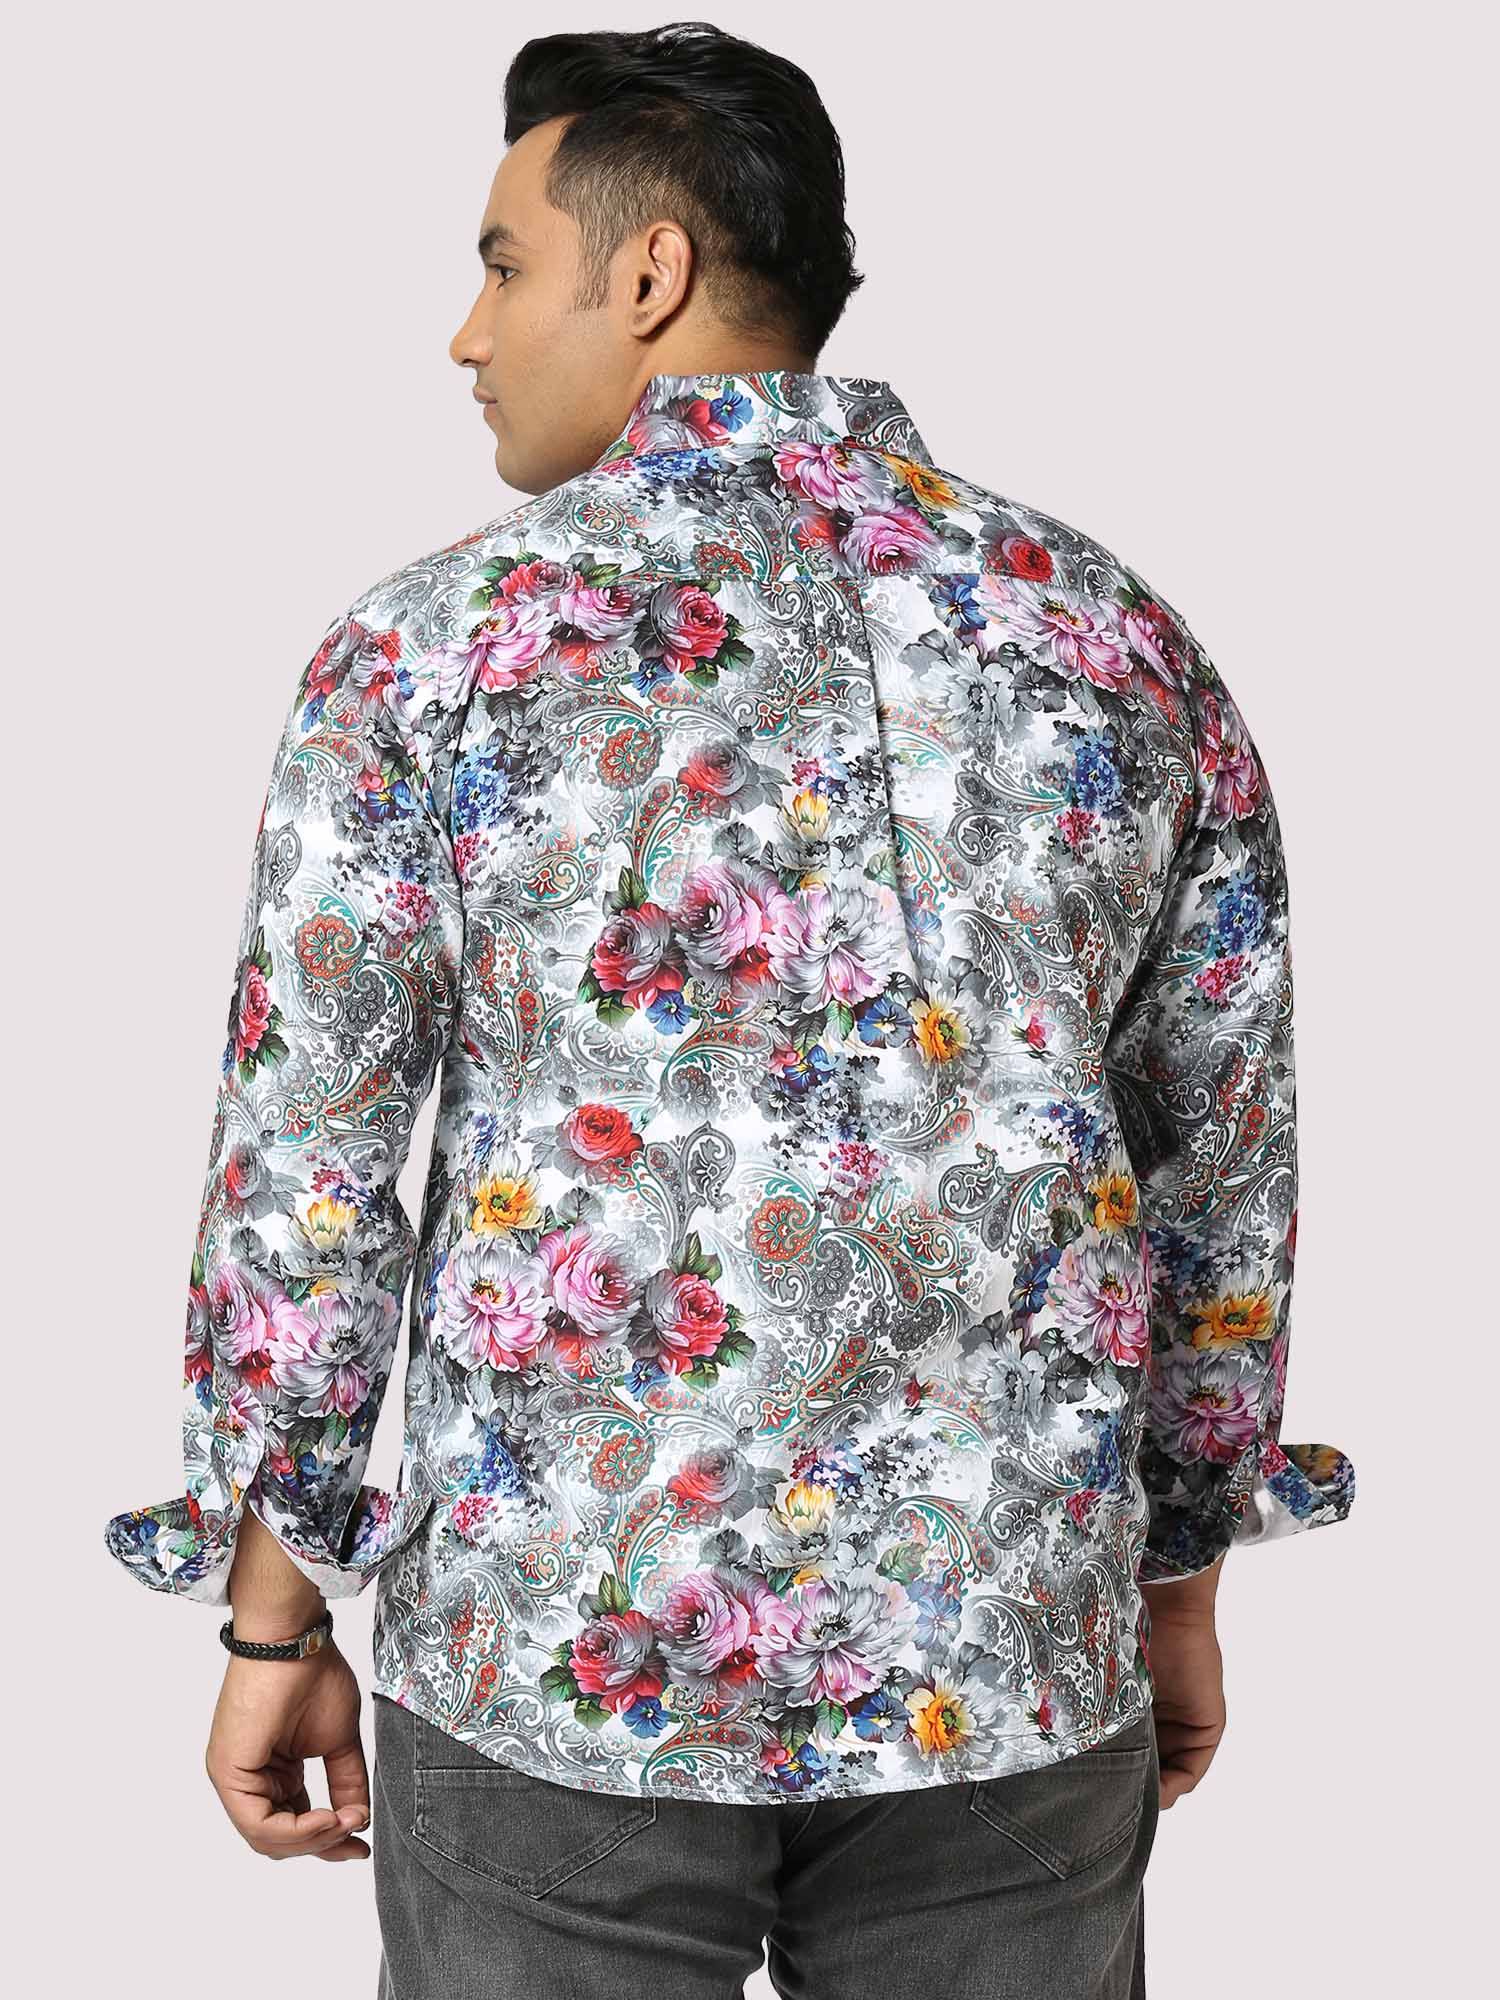 Social Full Sleeves Digital Printed Shirt - Guniaa Fashions